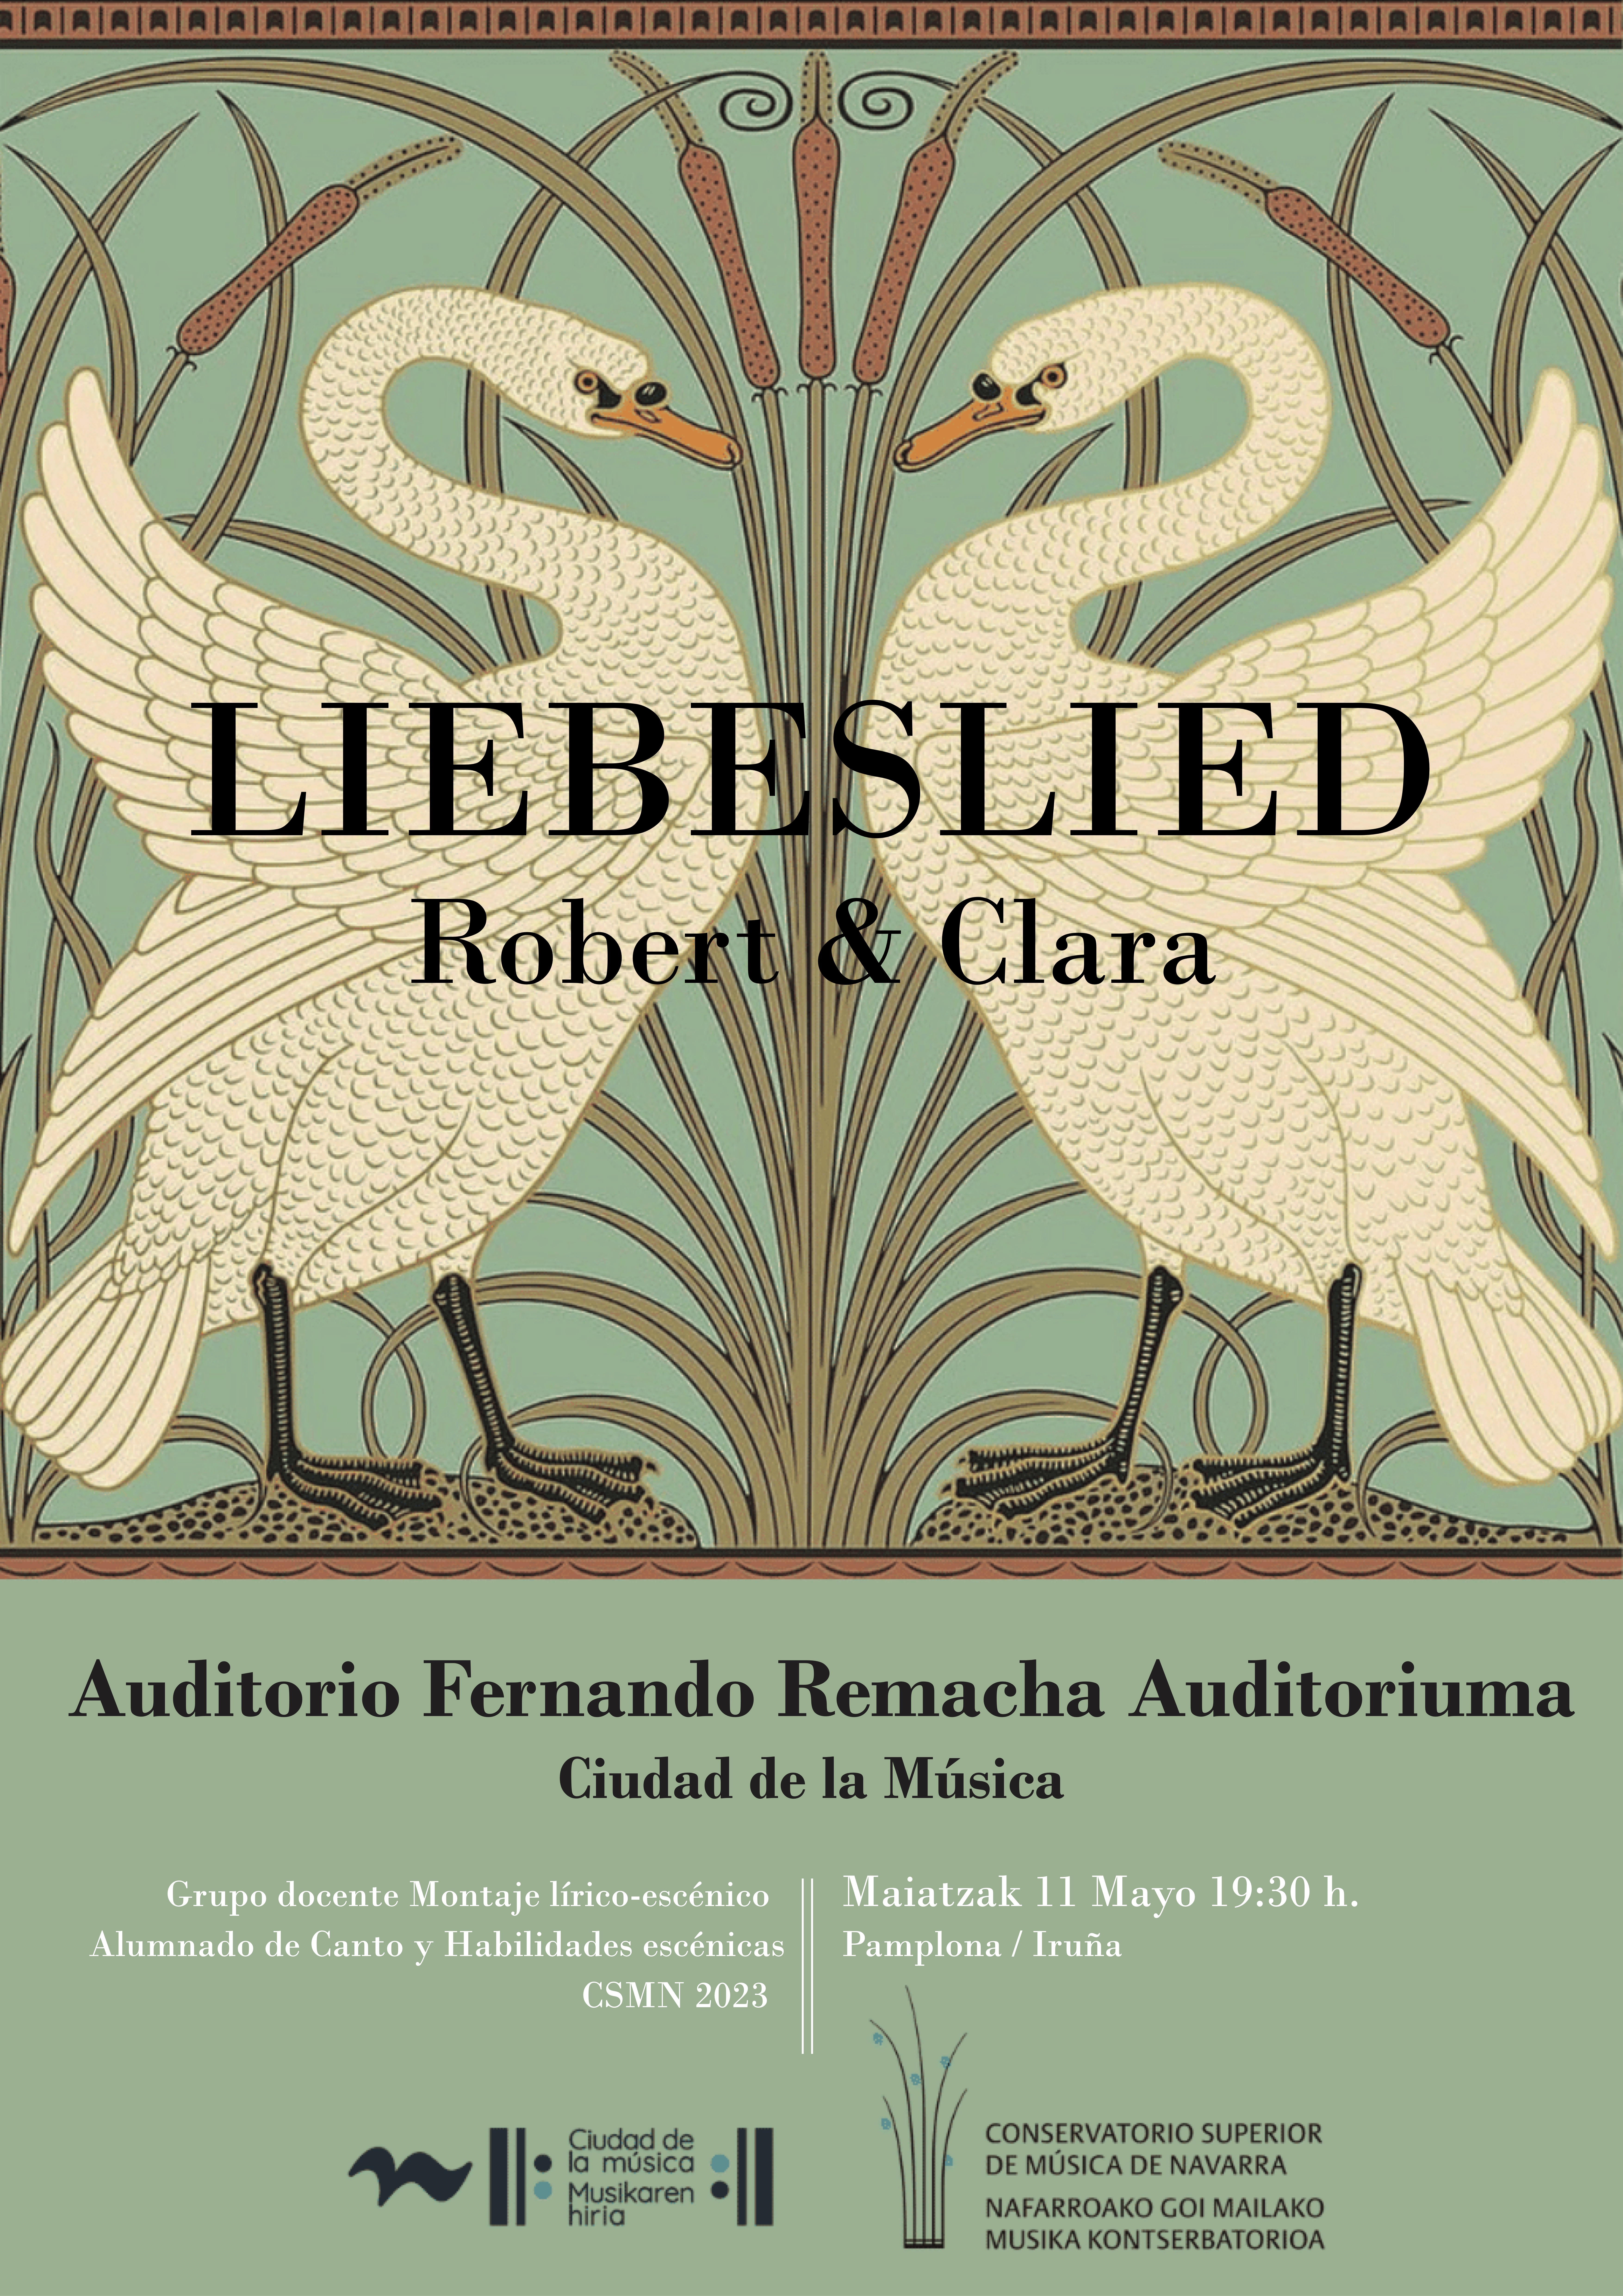 Este jueves 11 de mayo se estrena en el Conservatorio Superior “Liebeslied -Robert & Clara” ,música, poesía y movimiento entorno a los Schumann